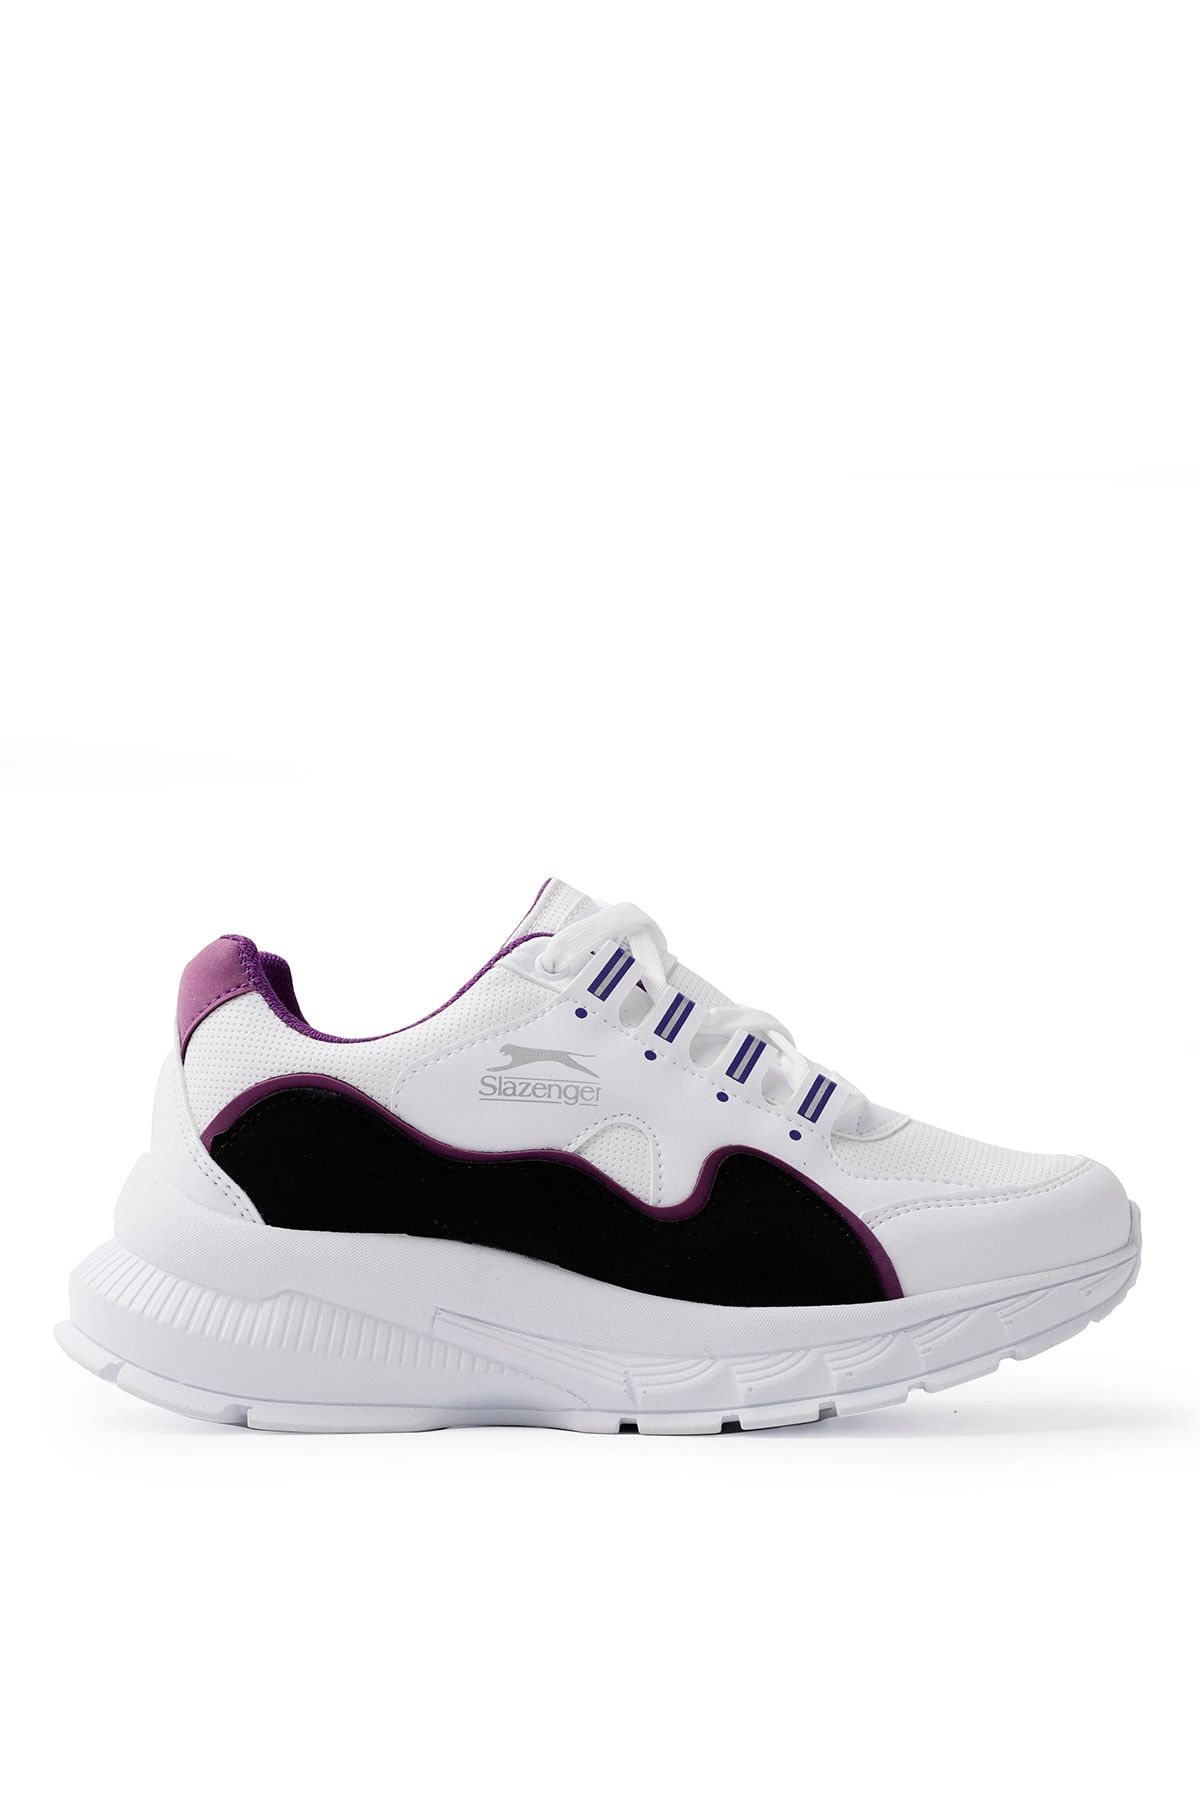 Slazenger Kerry Sneaker Kadın Ayakkabı Beyaz / Mor